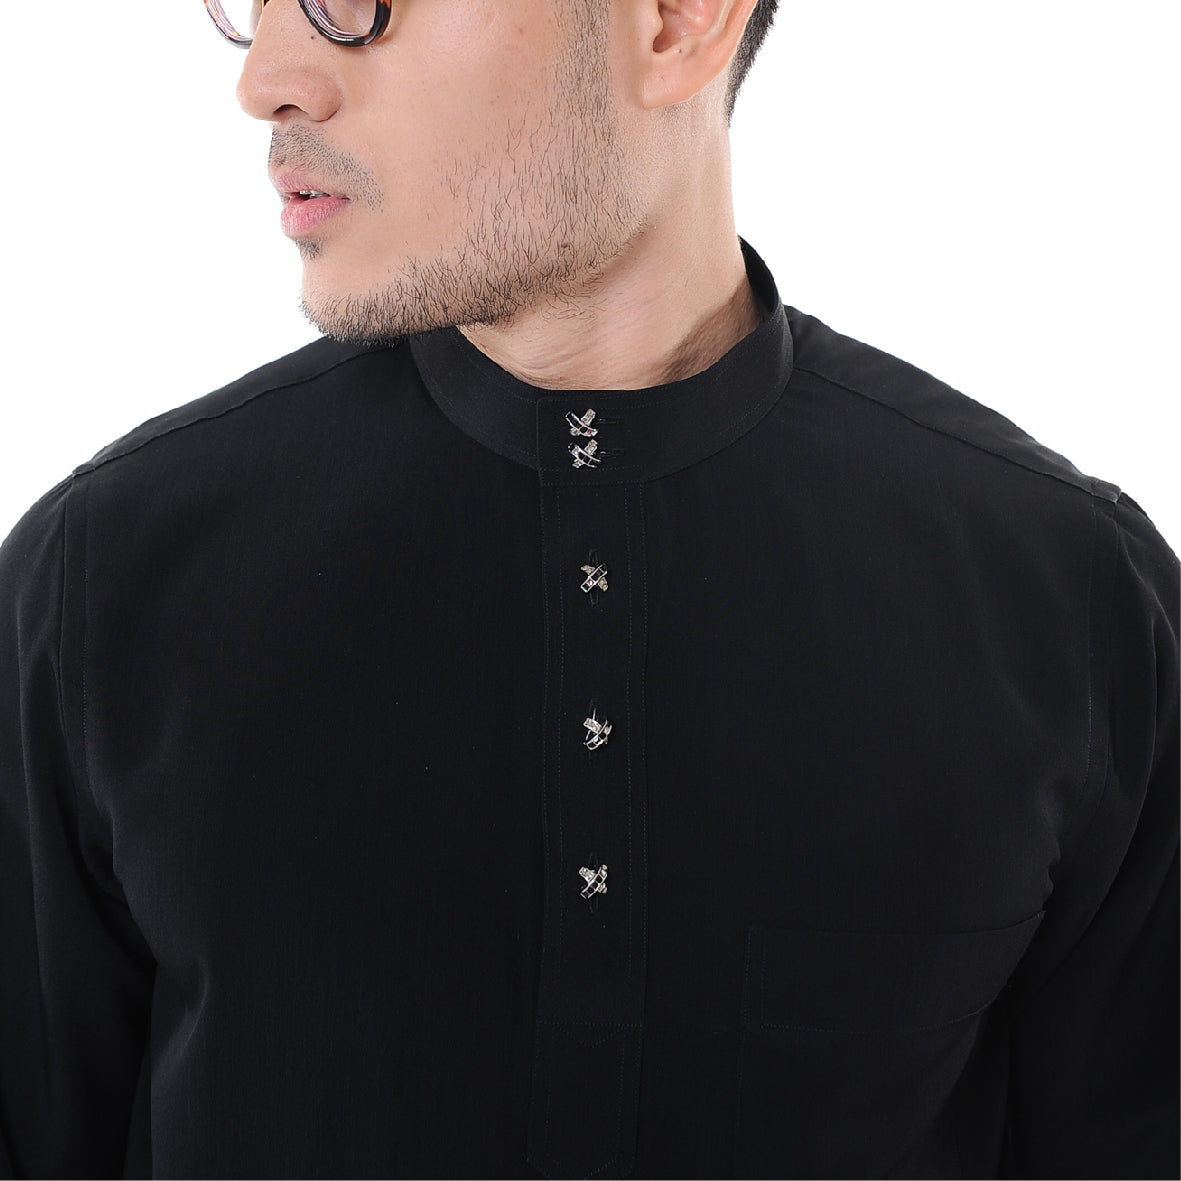 Baju Melayu Japanese Crepe Cekak Musang Black